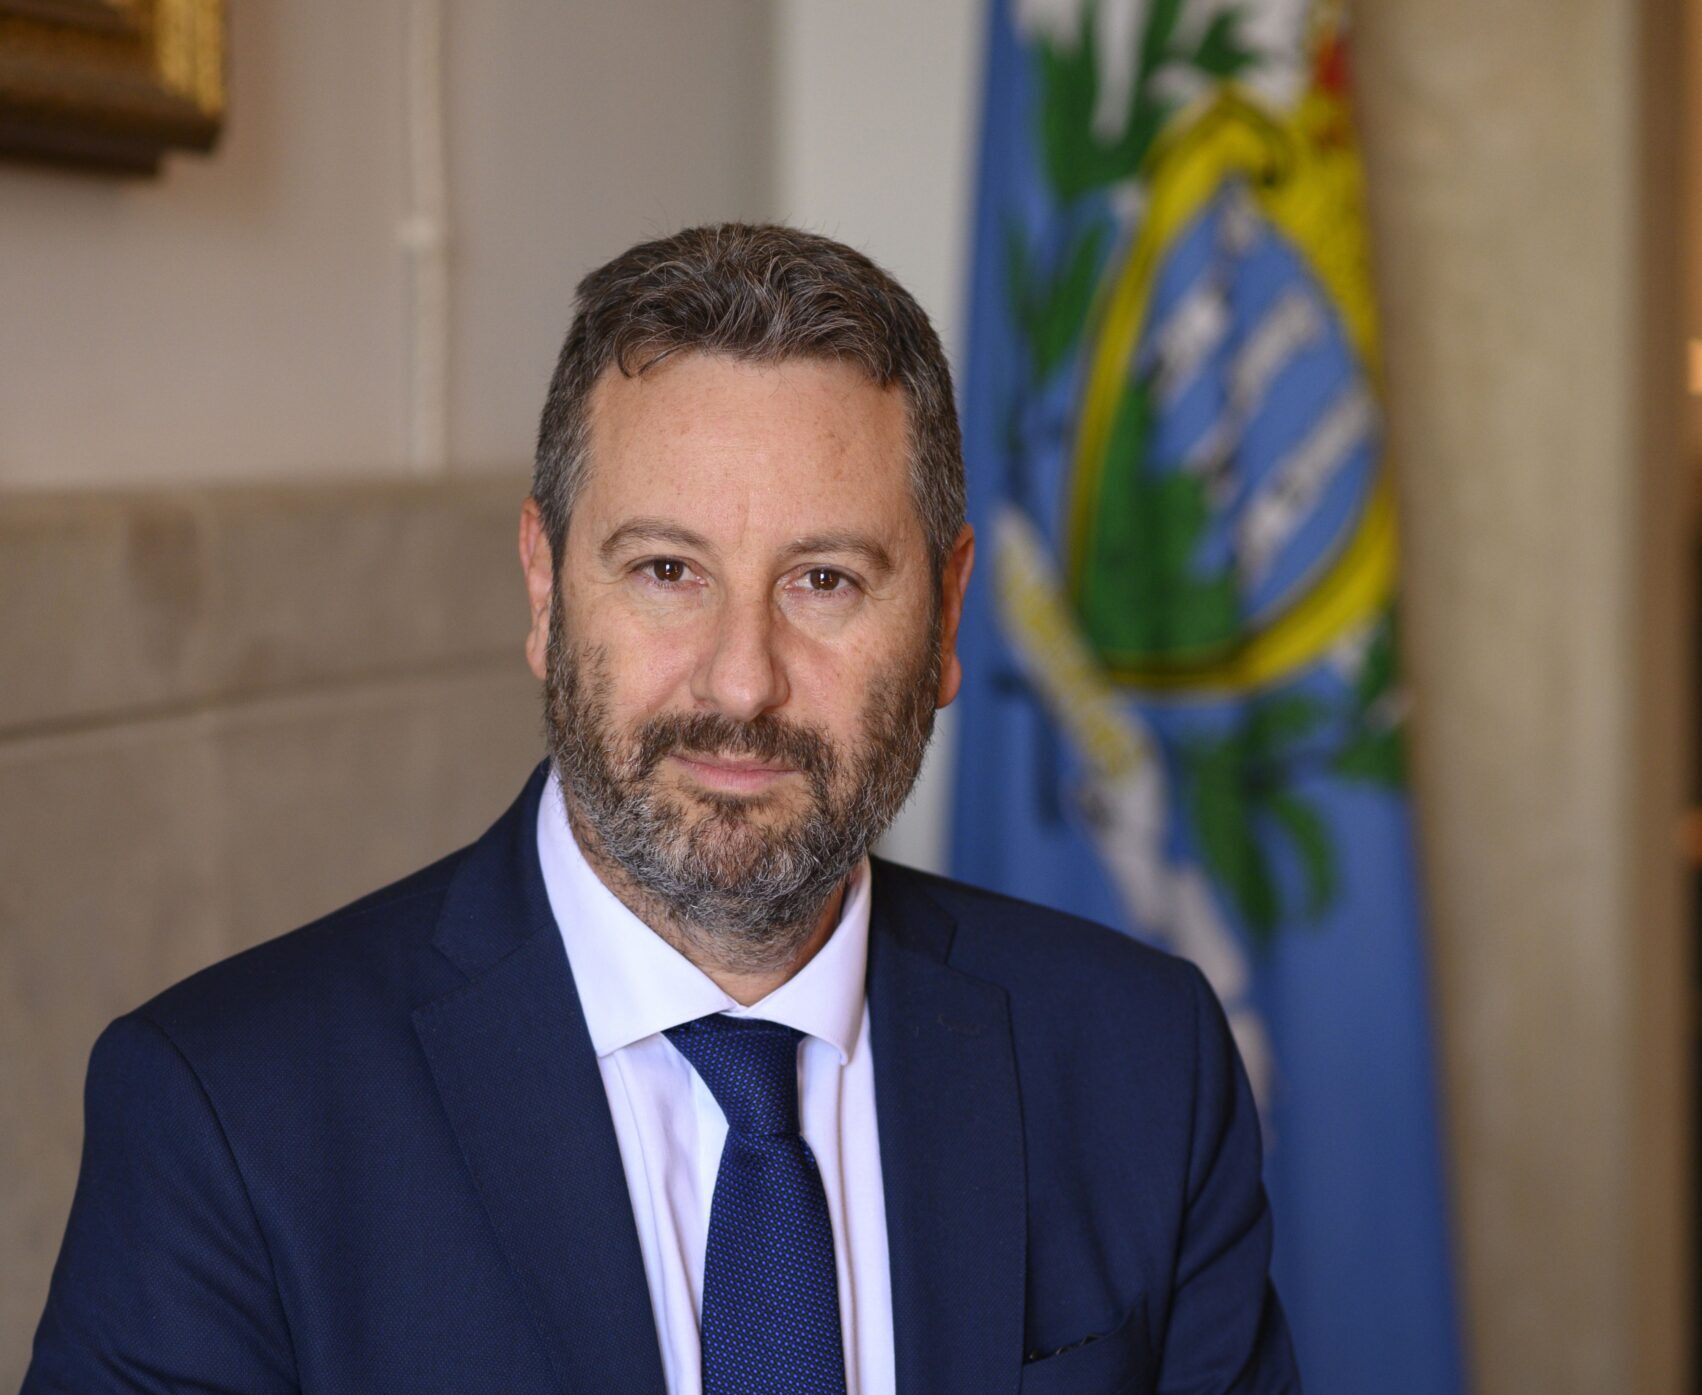 Conferma a San Marino del Rating BB, il Segretario Gatti: “Profondamente deluso dal giudizio di Fitch”